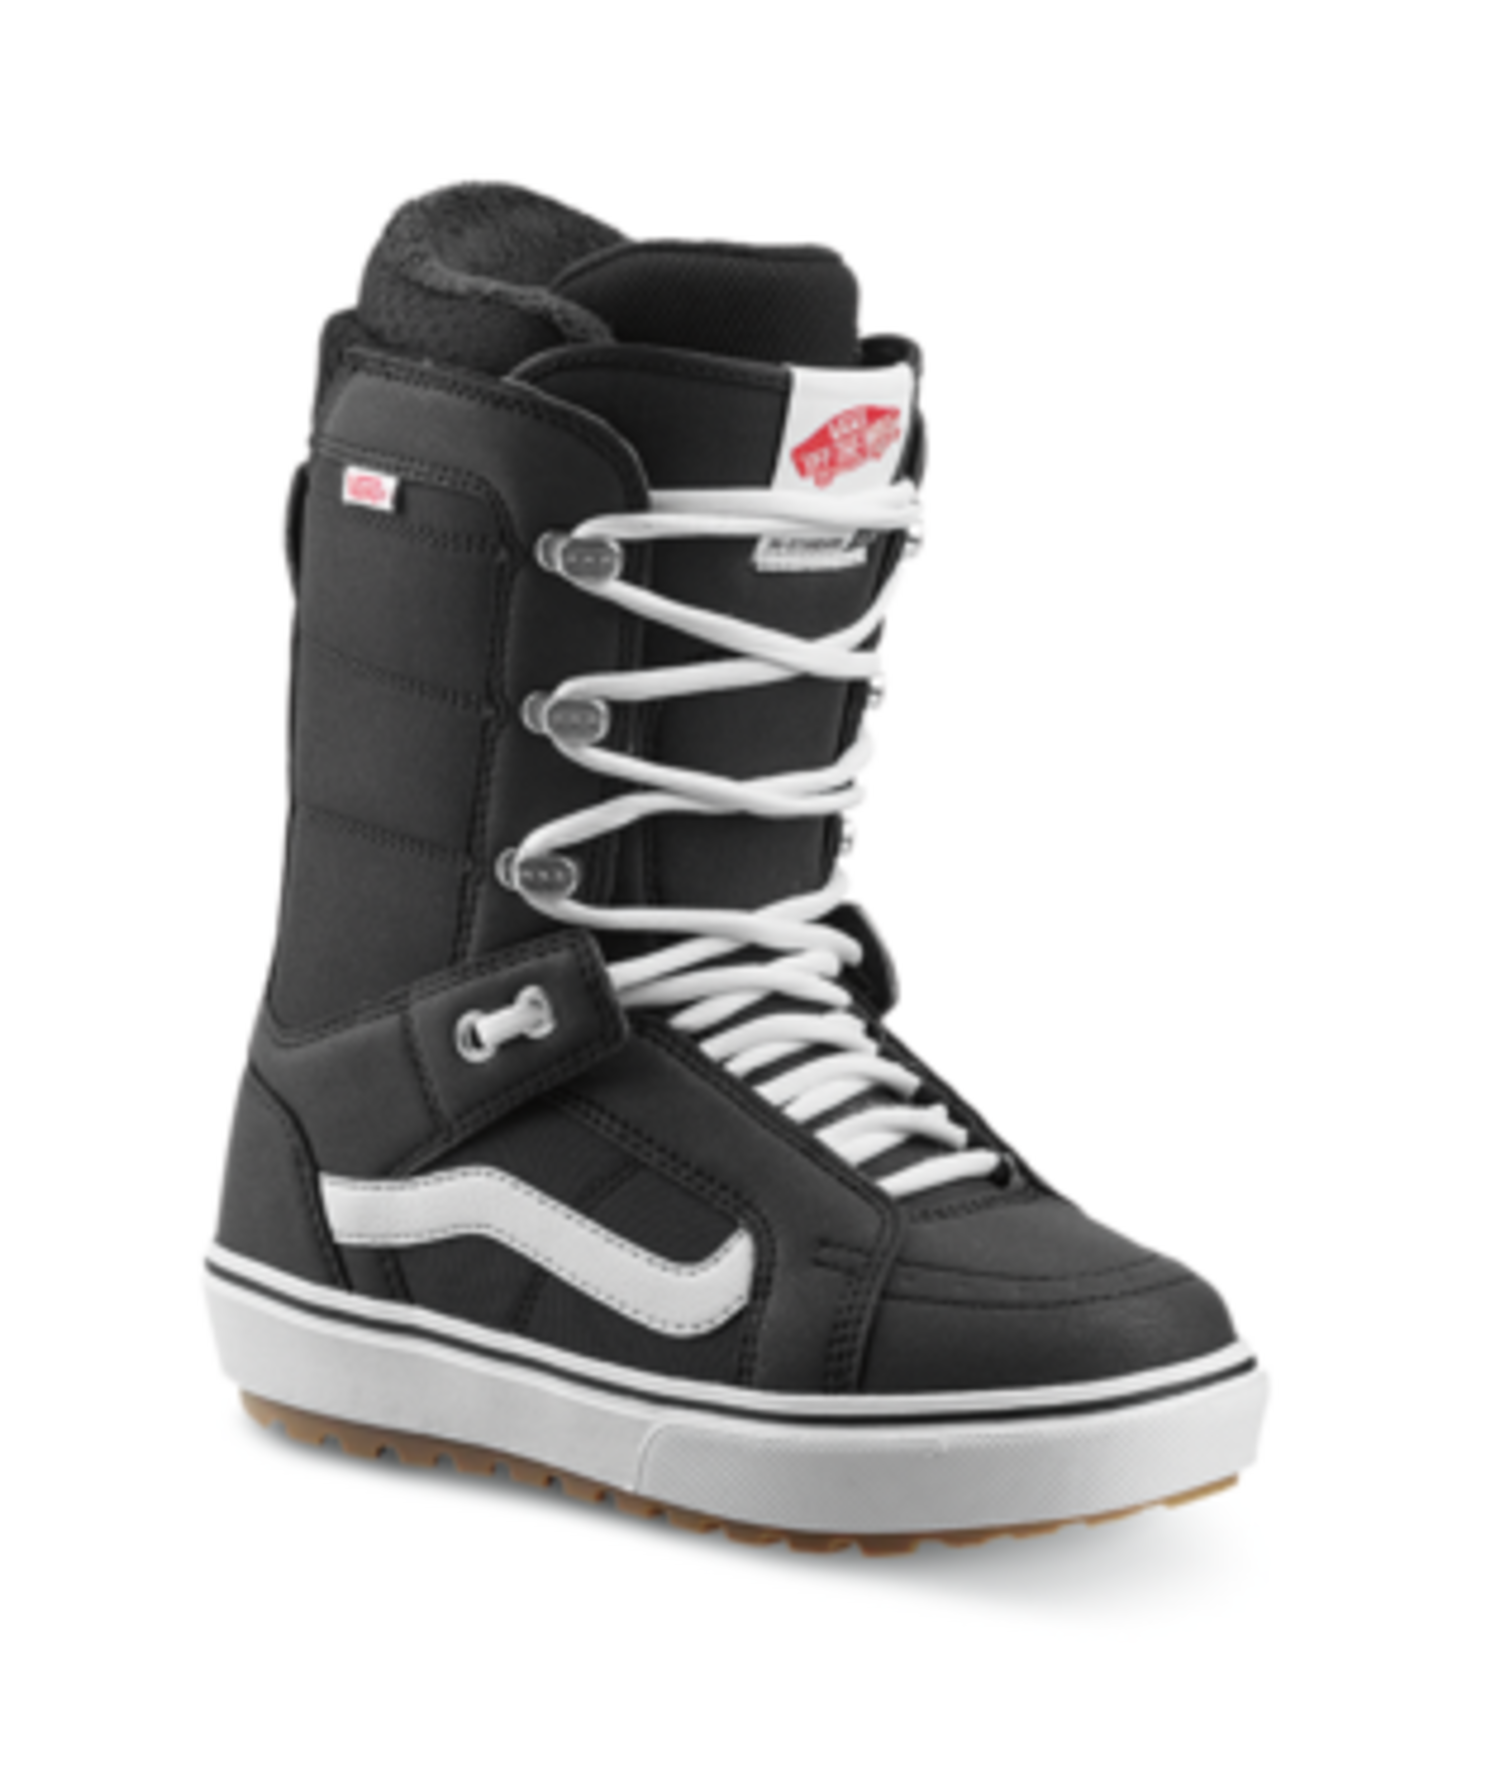 VANS VANS Hi-Standard OG Snowboard Boots in Black/White